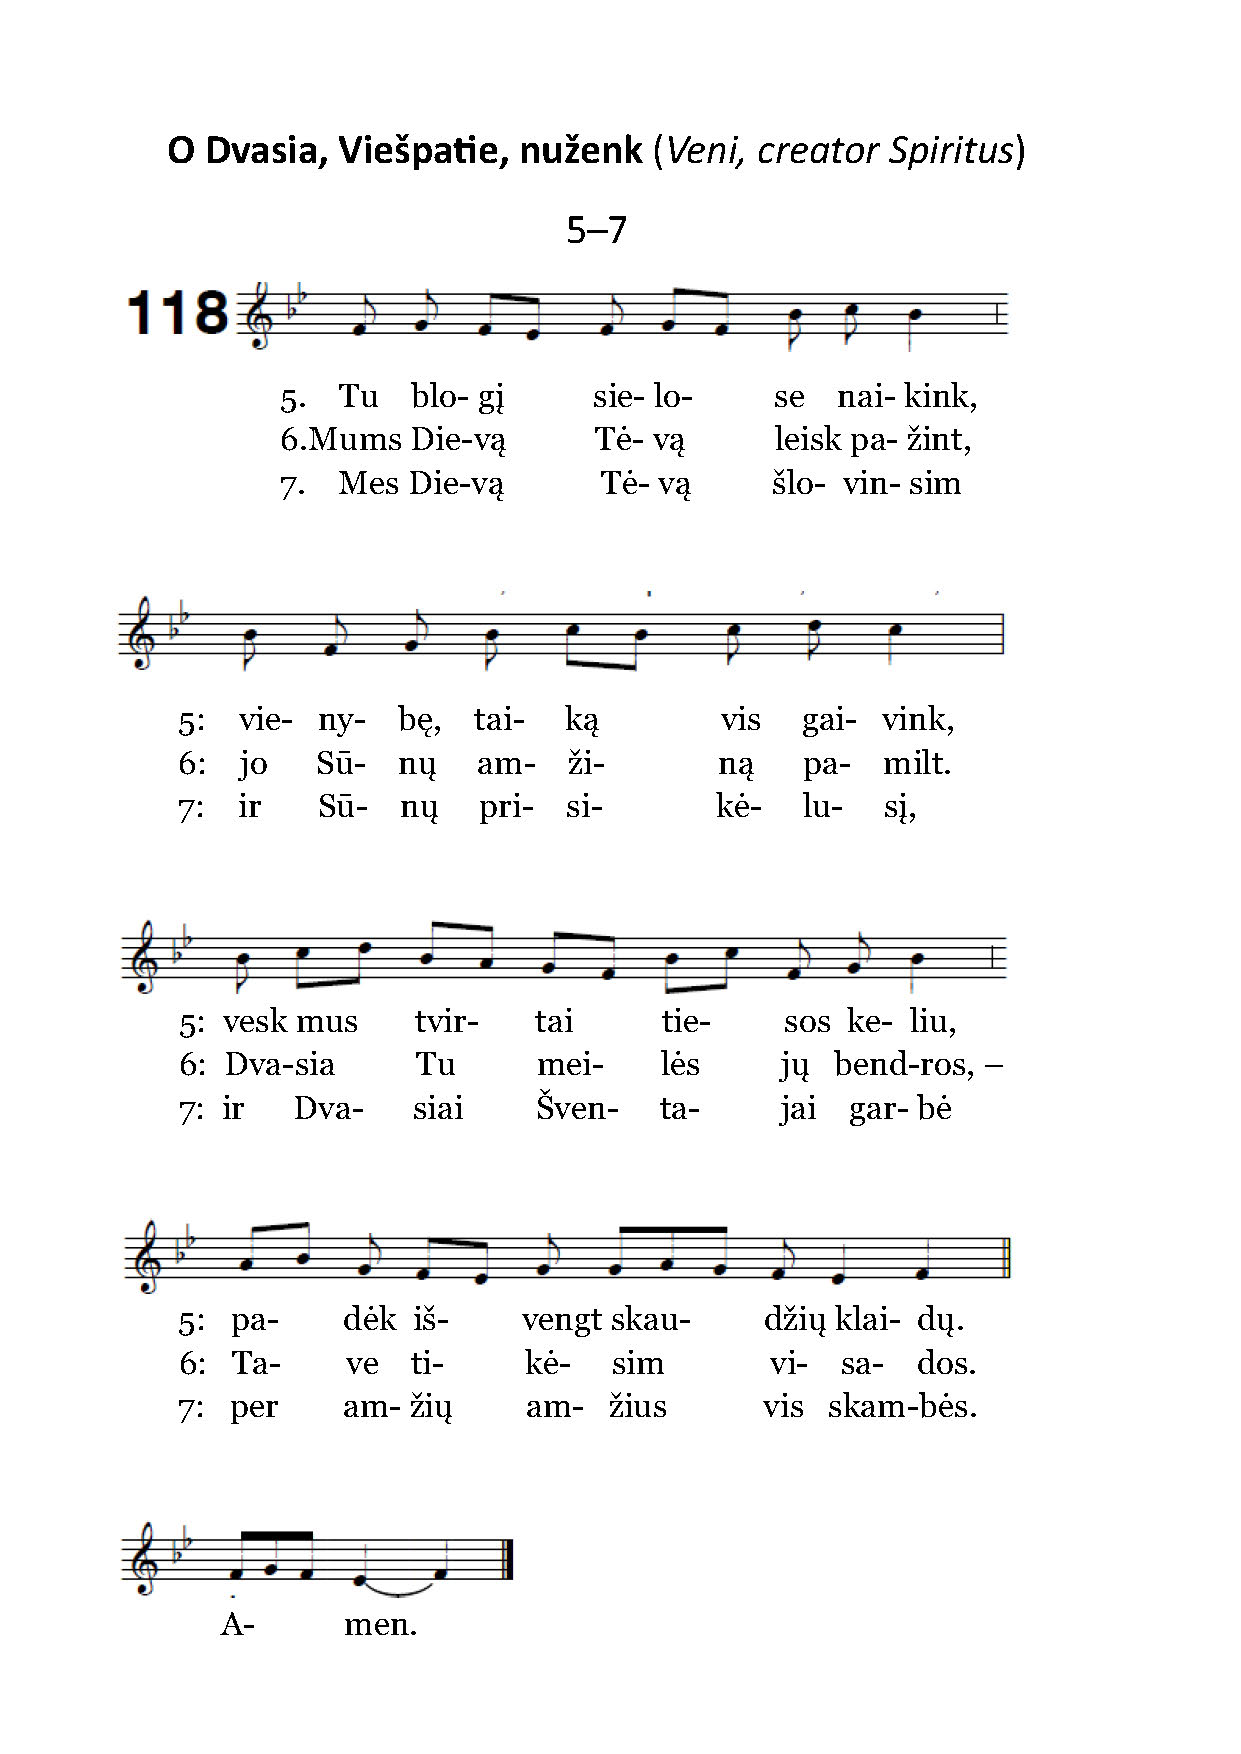 Šventosios Dvasios himnas 5-7 posmeliai